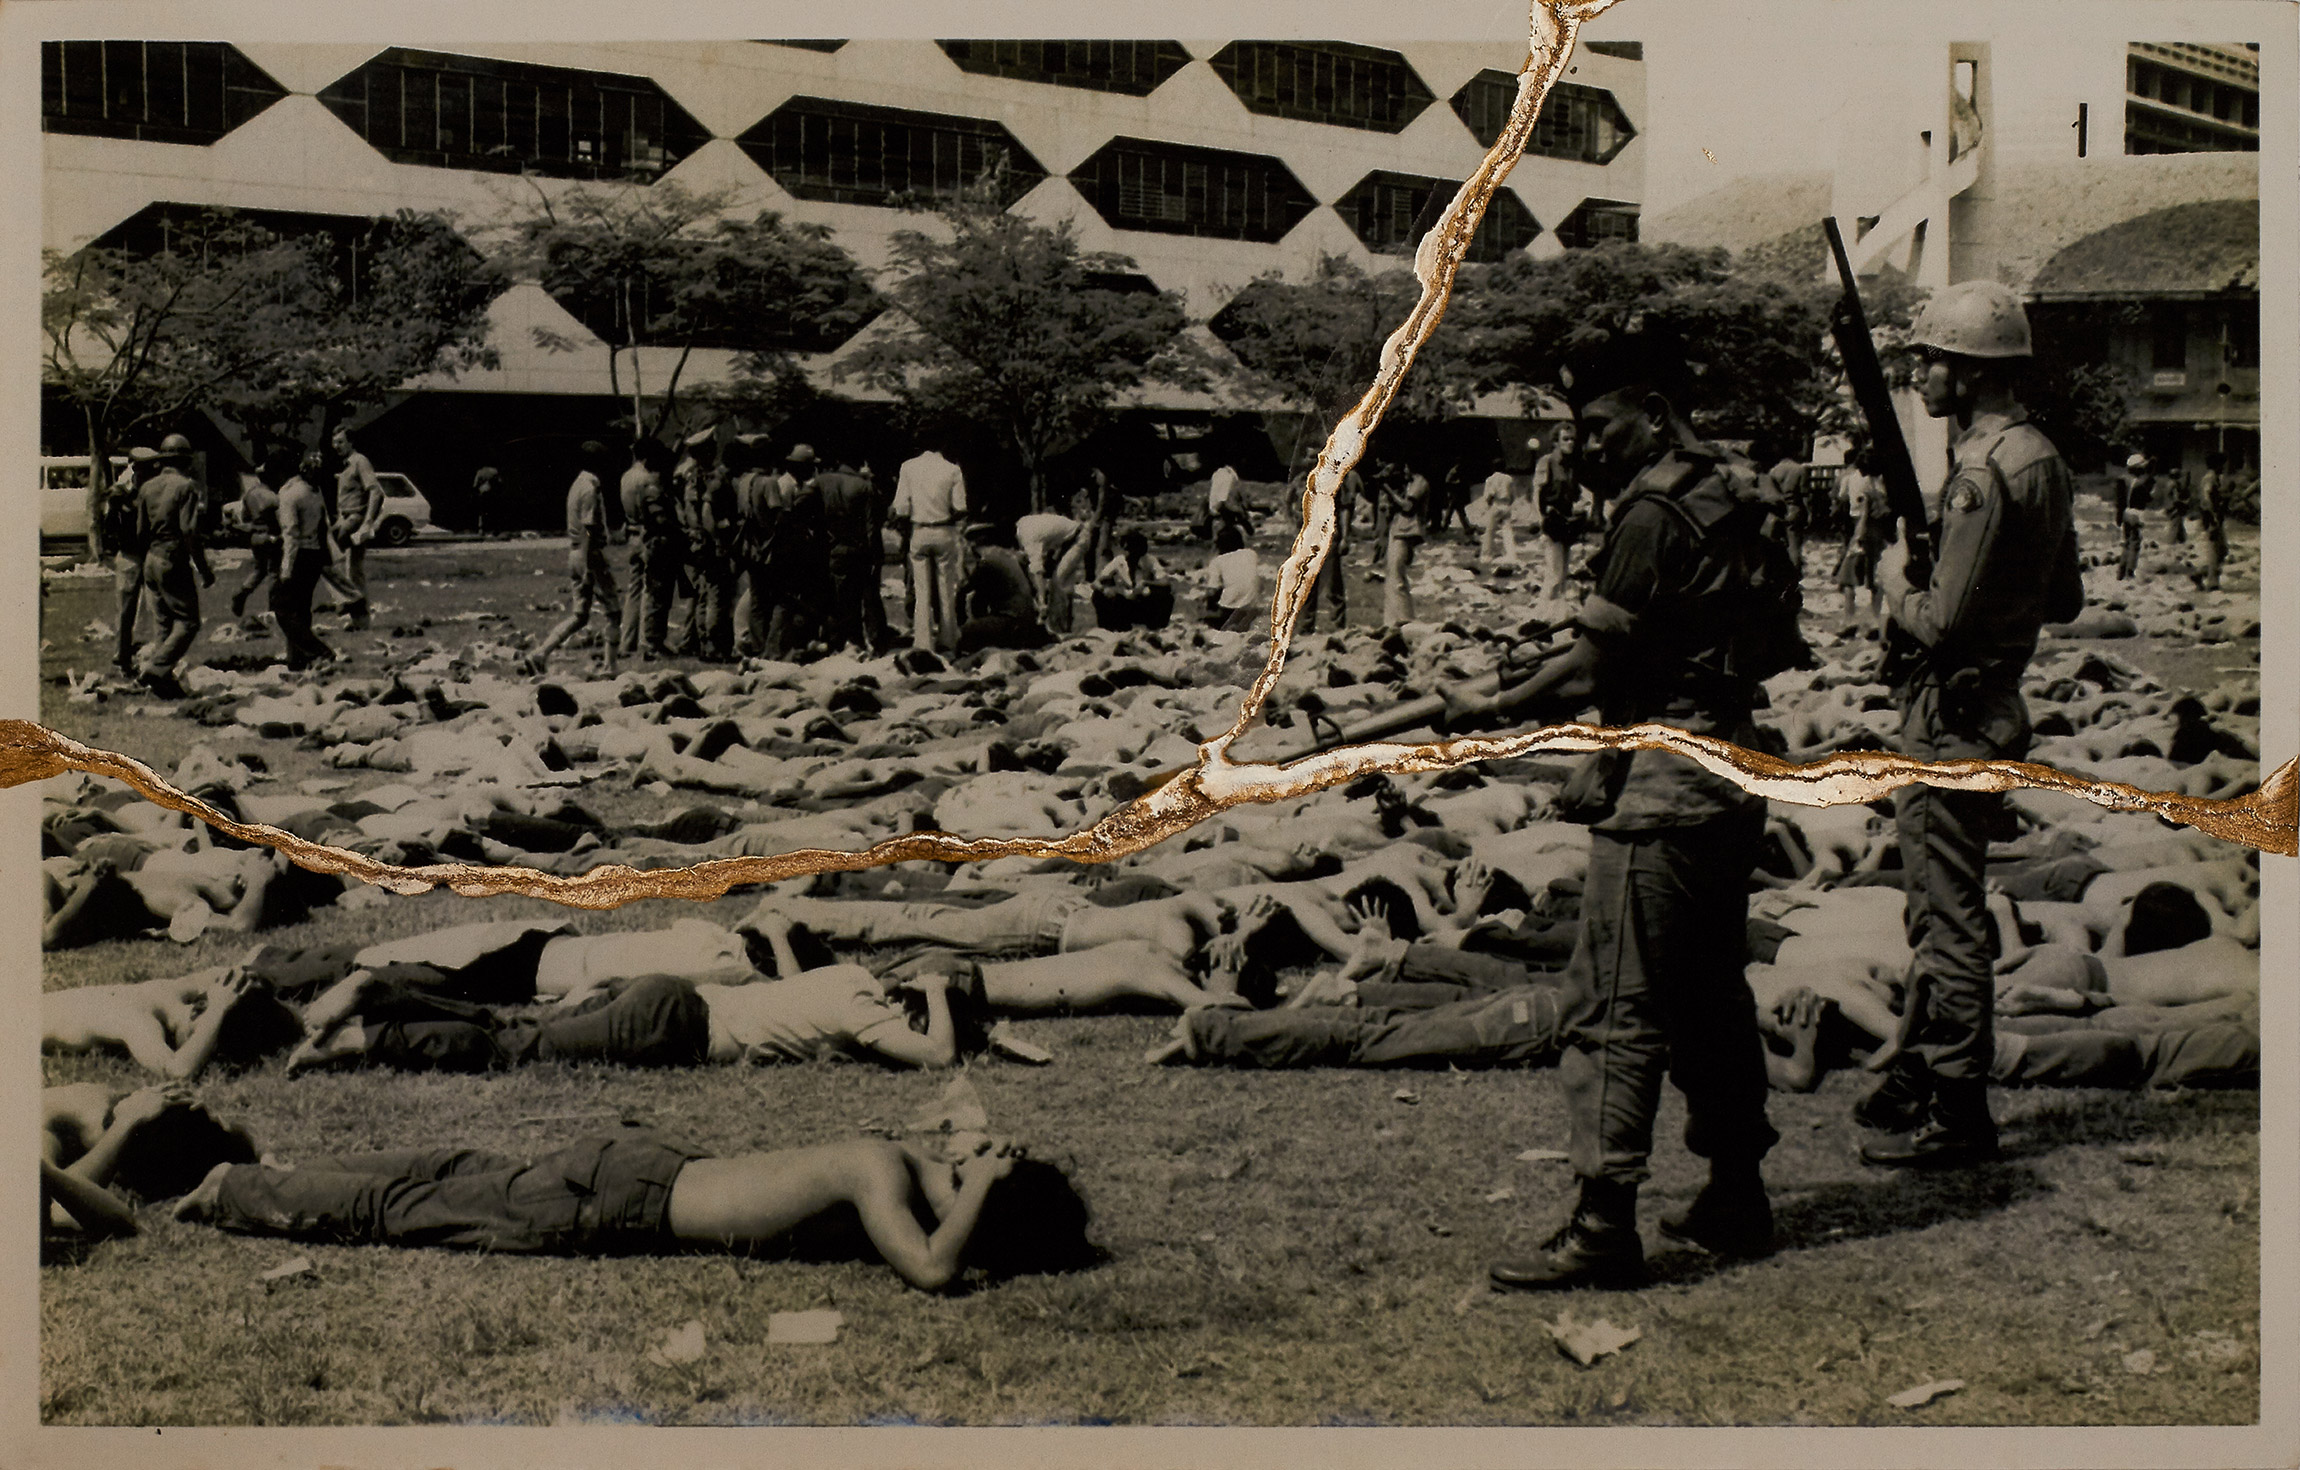 Автор:  Чаринторн Рачурутчата, Таиланд.

&laquo;Воля помнить&raquo;.

Проект сопоставляет снимки расстрела студентов 6 октября 1976 года в Университете Таммасат (на фото&nbsp;&mdash; архивный кадр) с фотографиями, сделанными во время продемократических протестов 2020&ndash;2022 годов. В 1976 году силовики и ультраправые открыли огонь по студентам, протестовавшим против возвращения в страну бывшего премьер-министра, фельдмаршала Танома Киттикачона.

Фотограф использует японский метод реставрации кинцуги, разрывая фотографии и затем исправляя их лаком и золотой пудрой, что символизирует превращение травмы в надежду